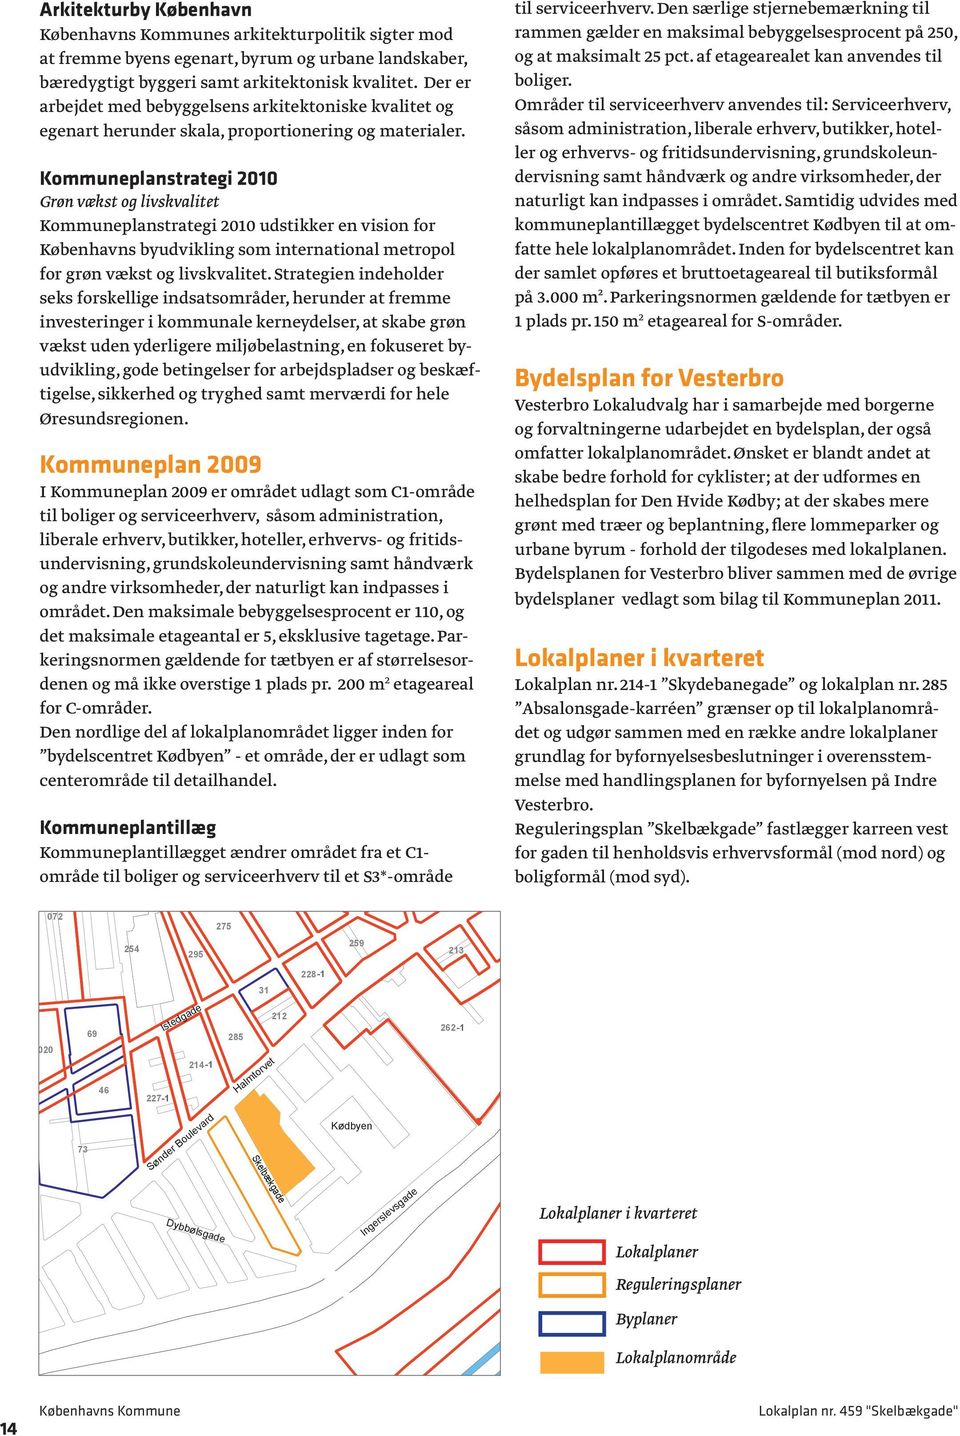 Kommuneplanstrategi 2010 Grøn vækst og livskvalitet Kommuneplanstrategi 2010 udstikker en vision for Københavns byudvikling som international metropol for grøn vækst og livskvalitet.